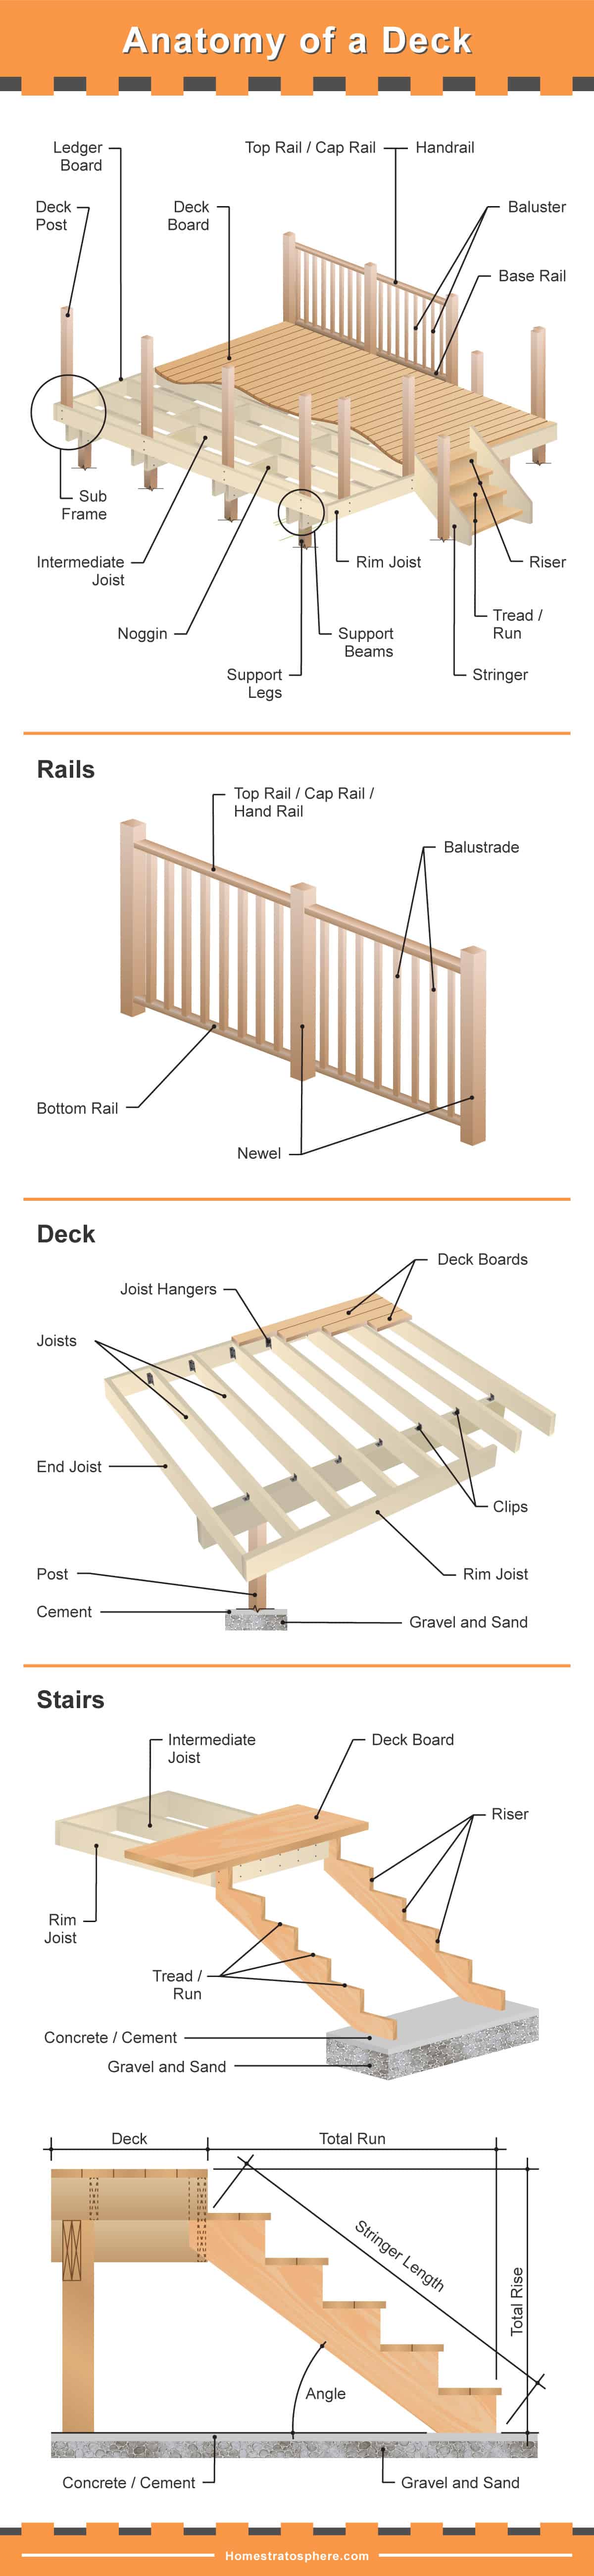 甲板部分——基础、栏杆、甲板和甲板楼梯的详细图。